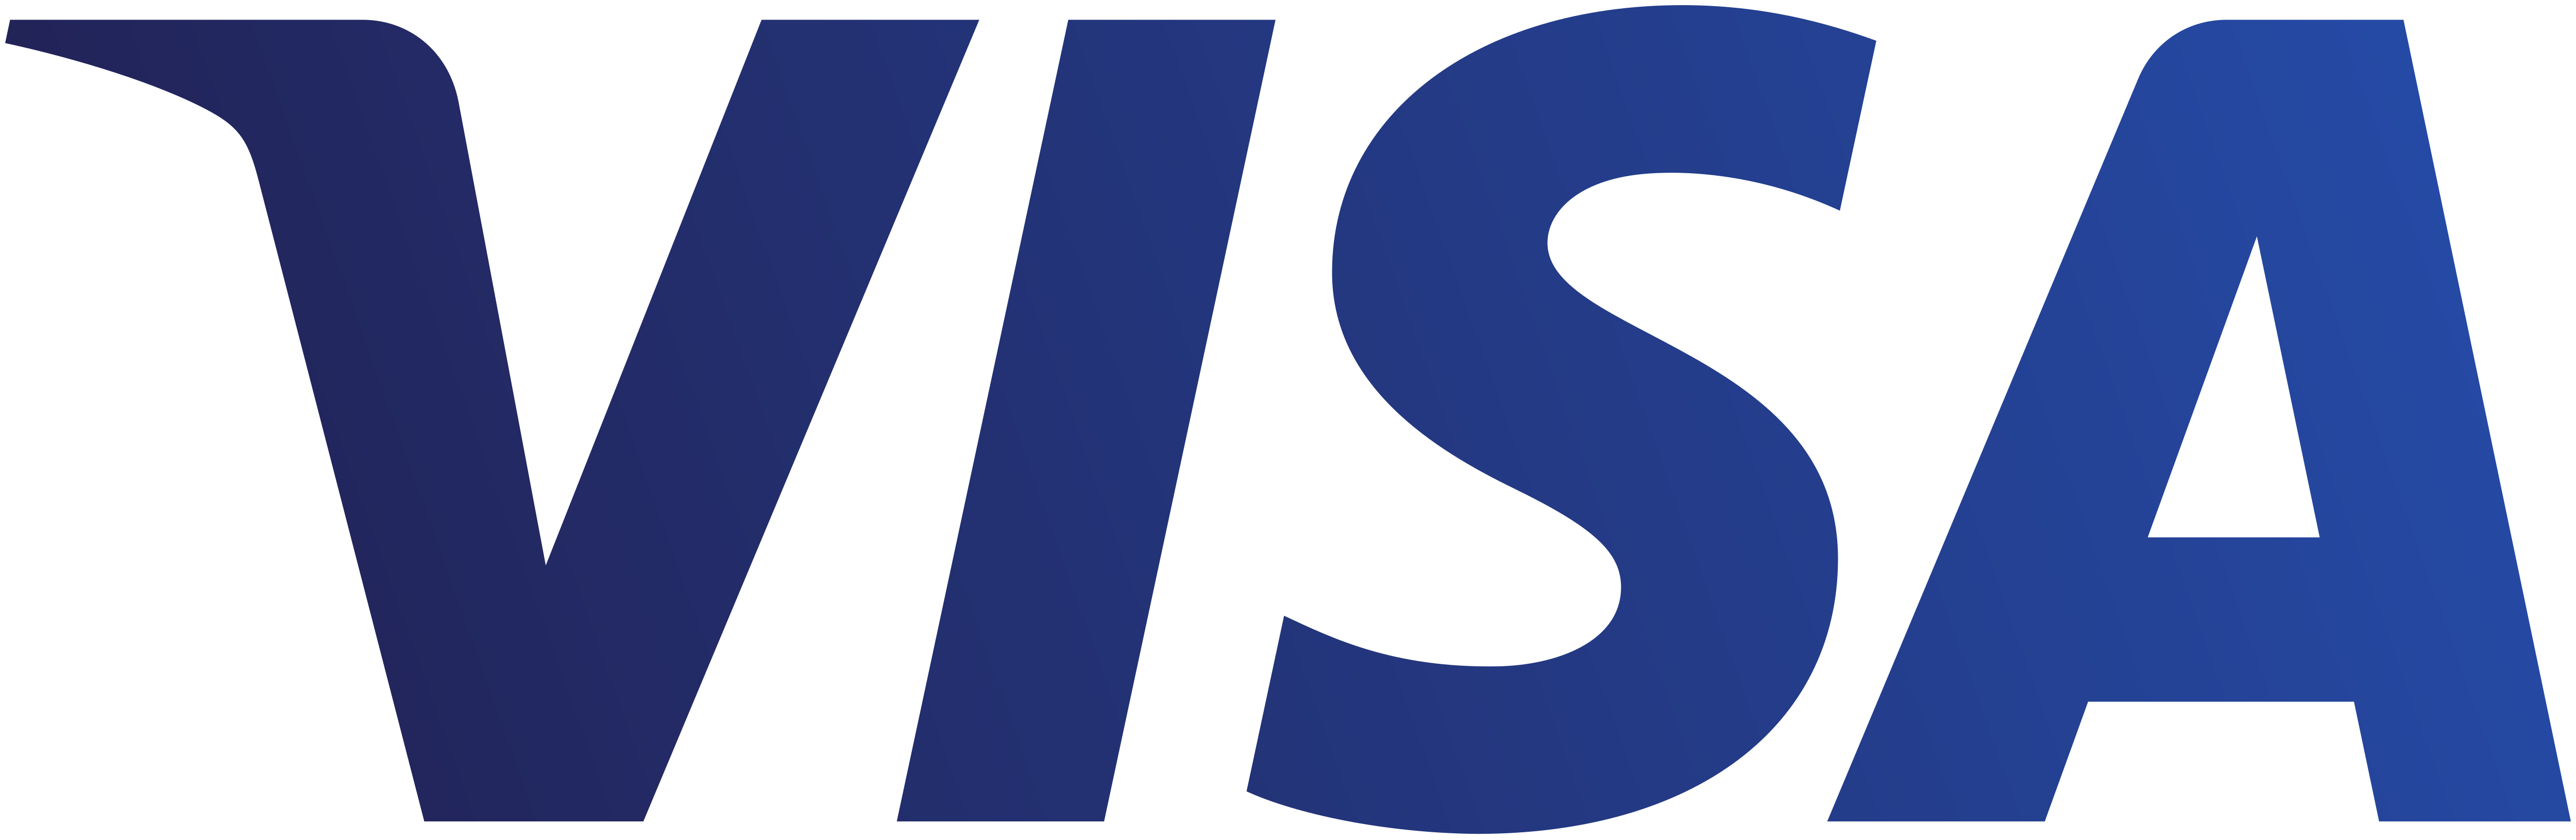 Visa Logo.